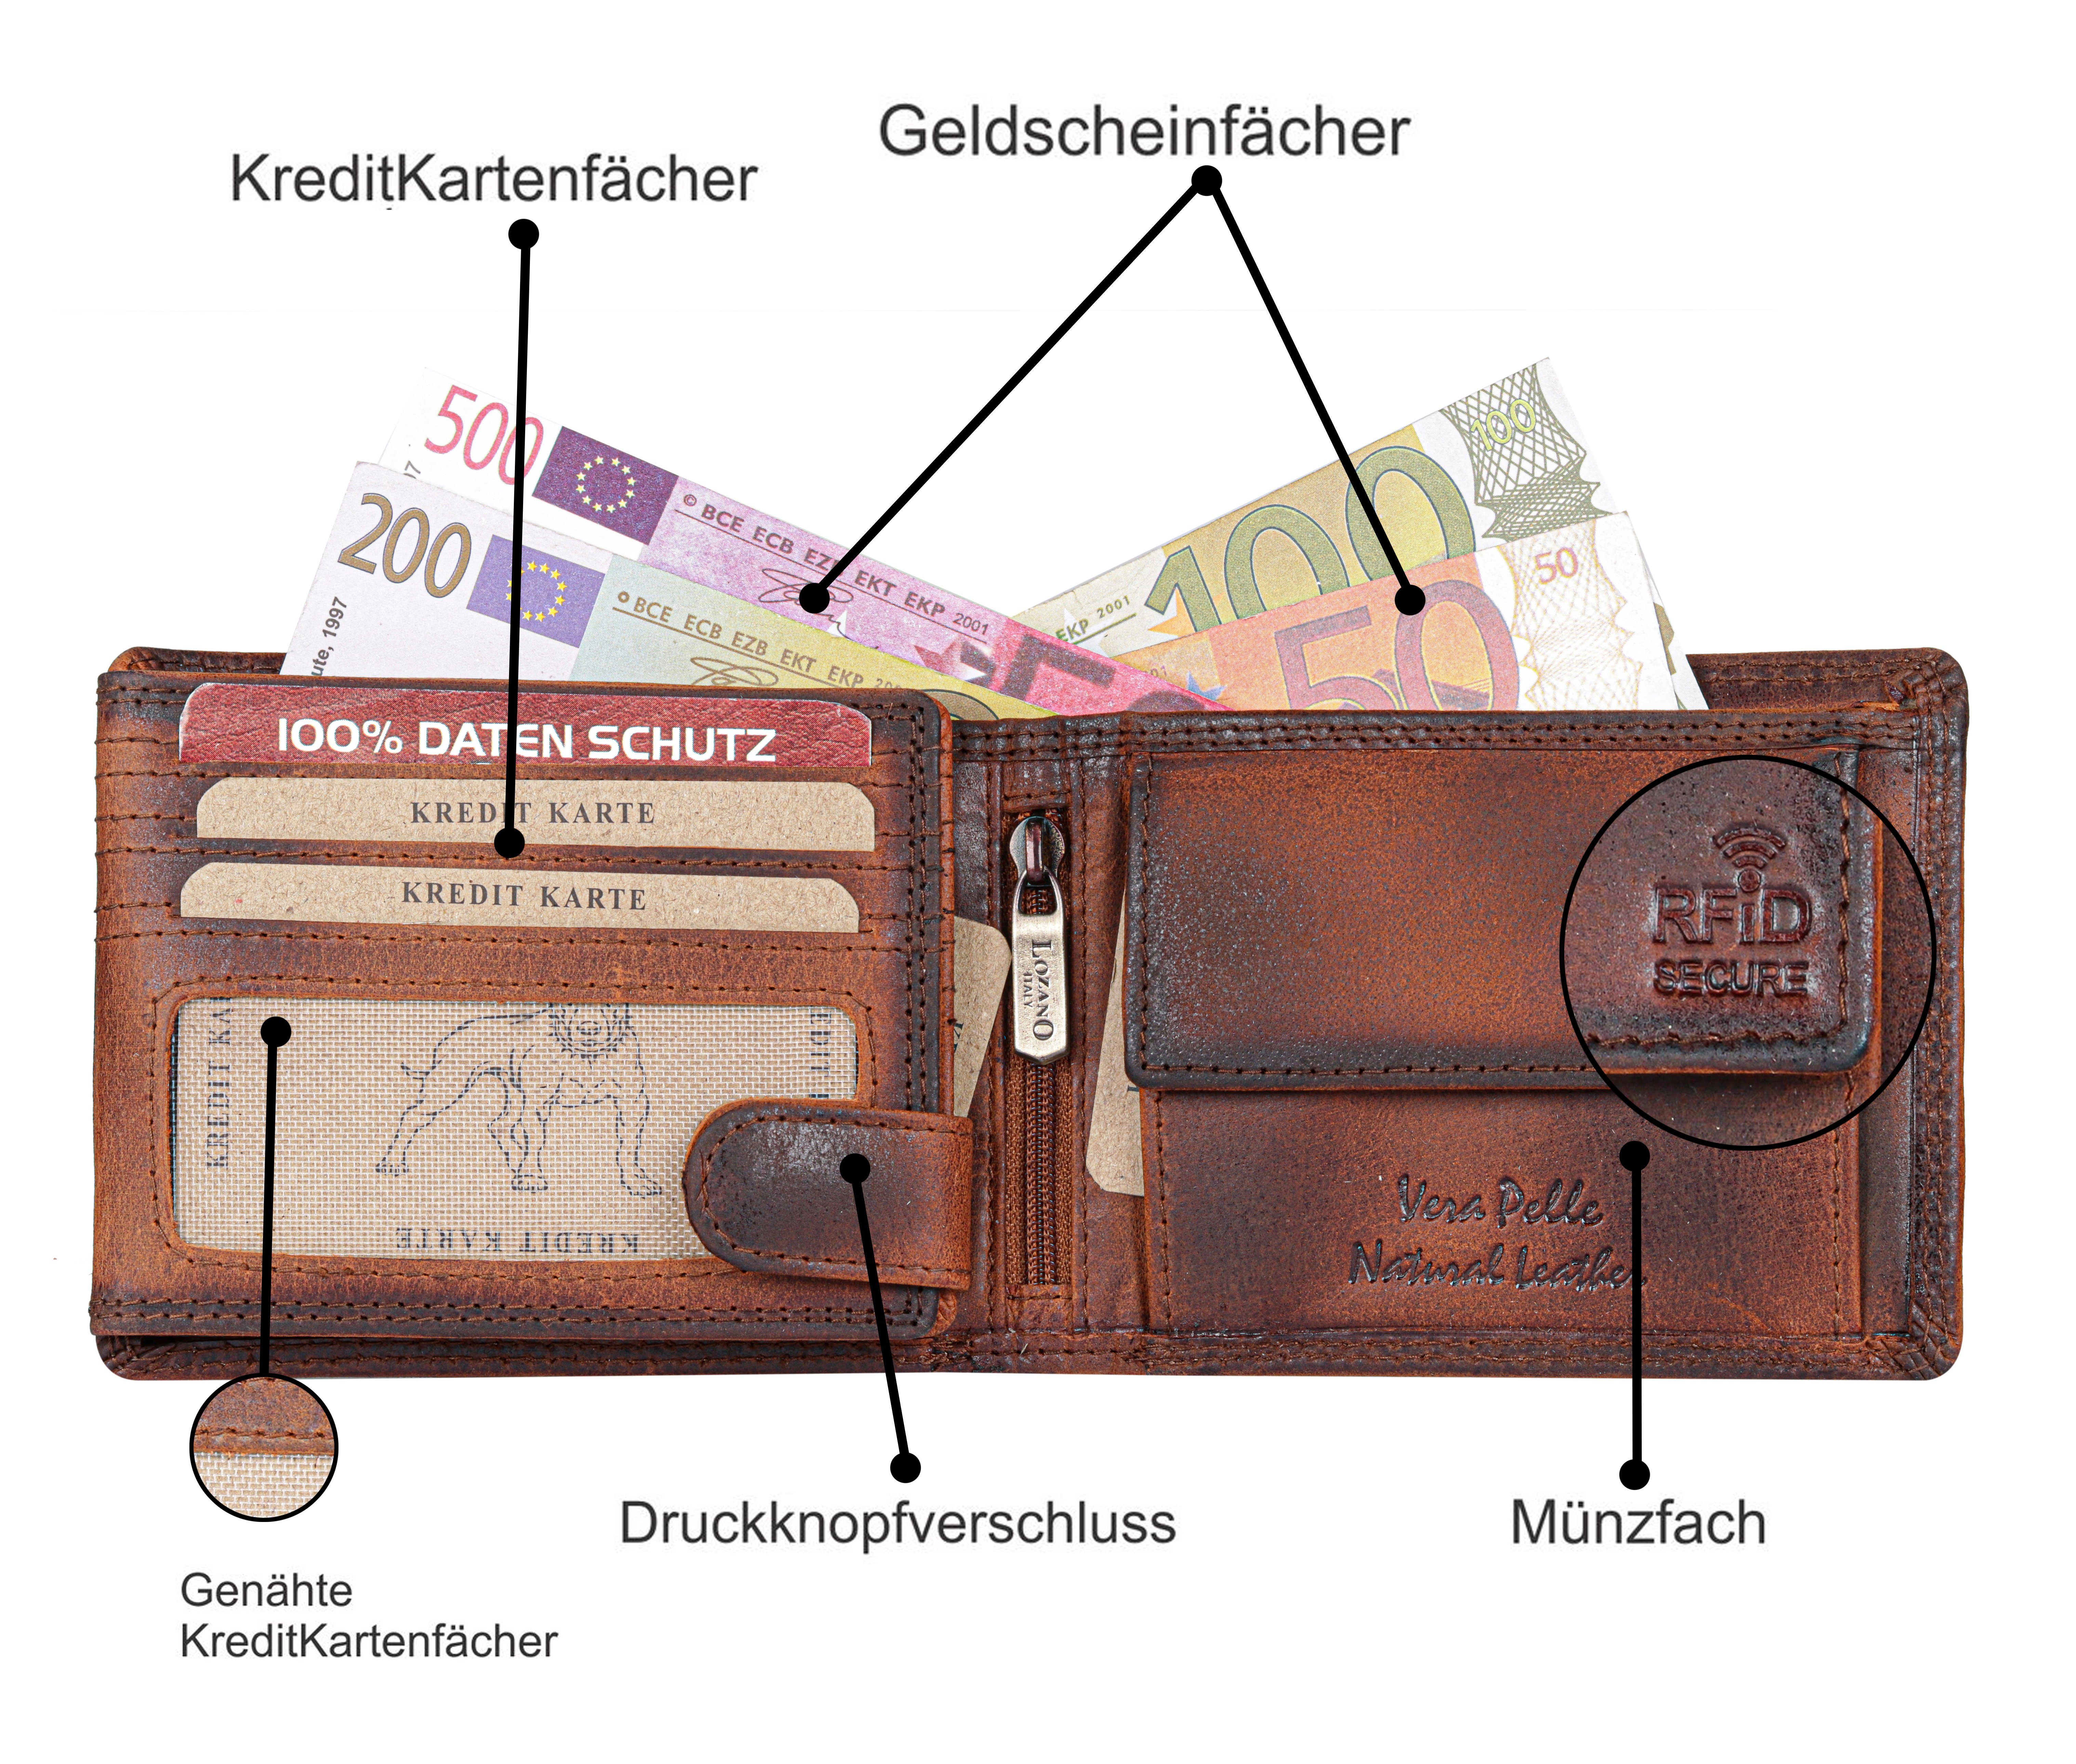 mit Büffelleder Leder Männerbörse Portemonnaie, Münzfach Schutz Geldbörse Brieftasche Börse Herren SHG Lederbörse RFID